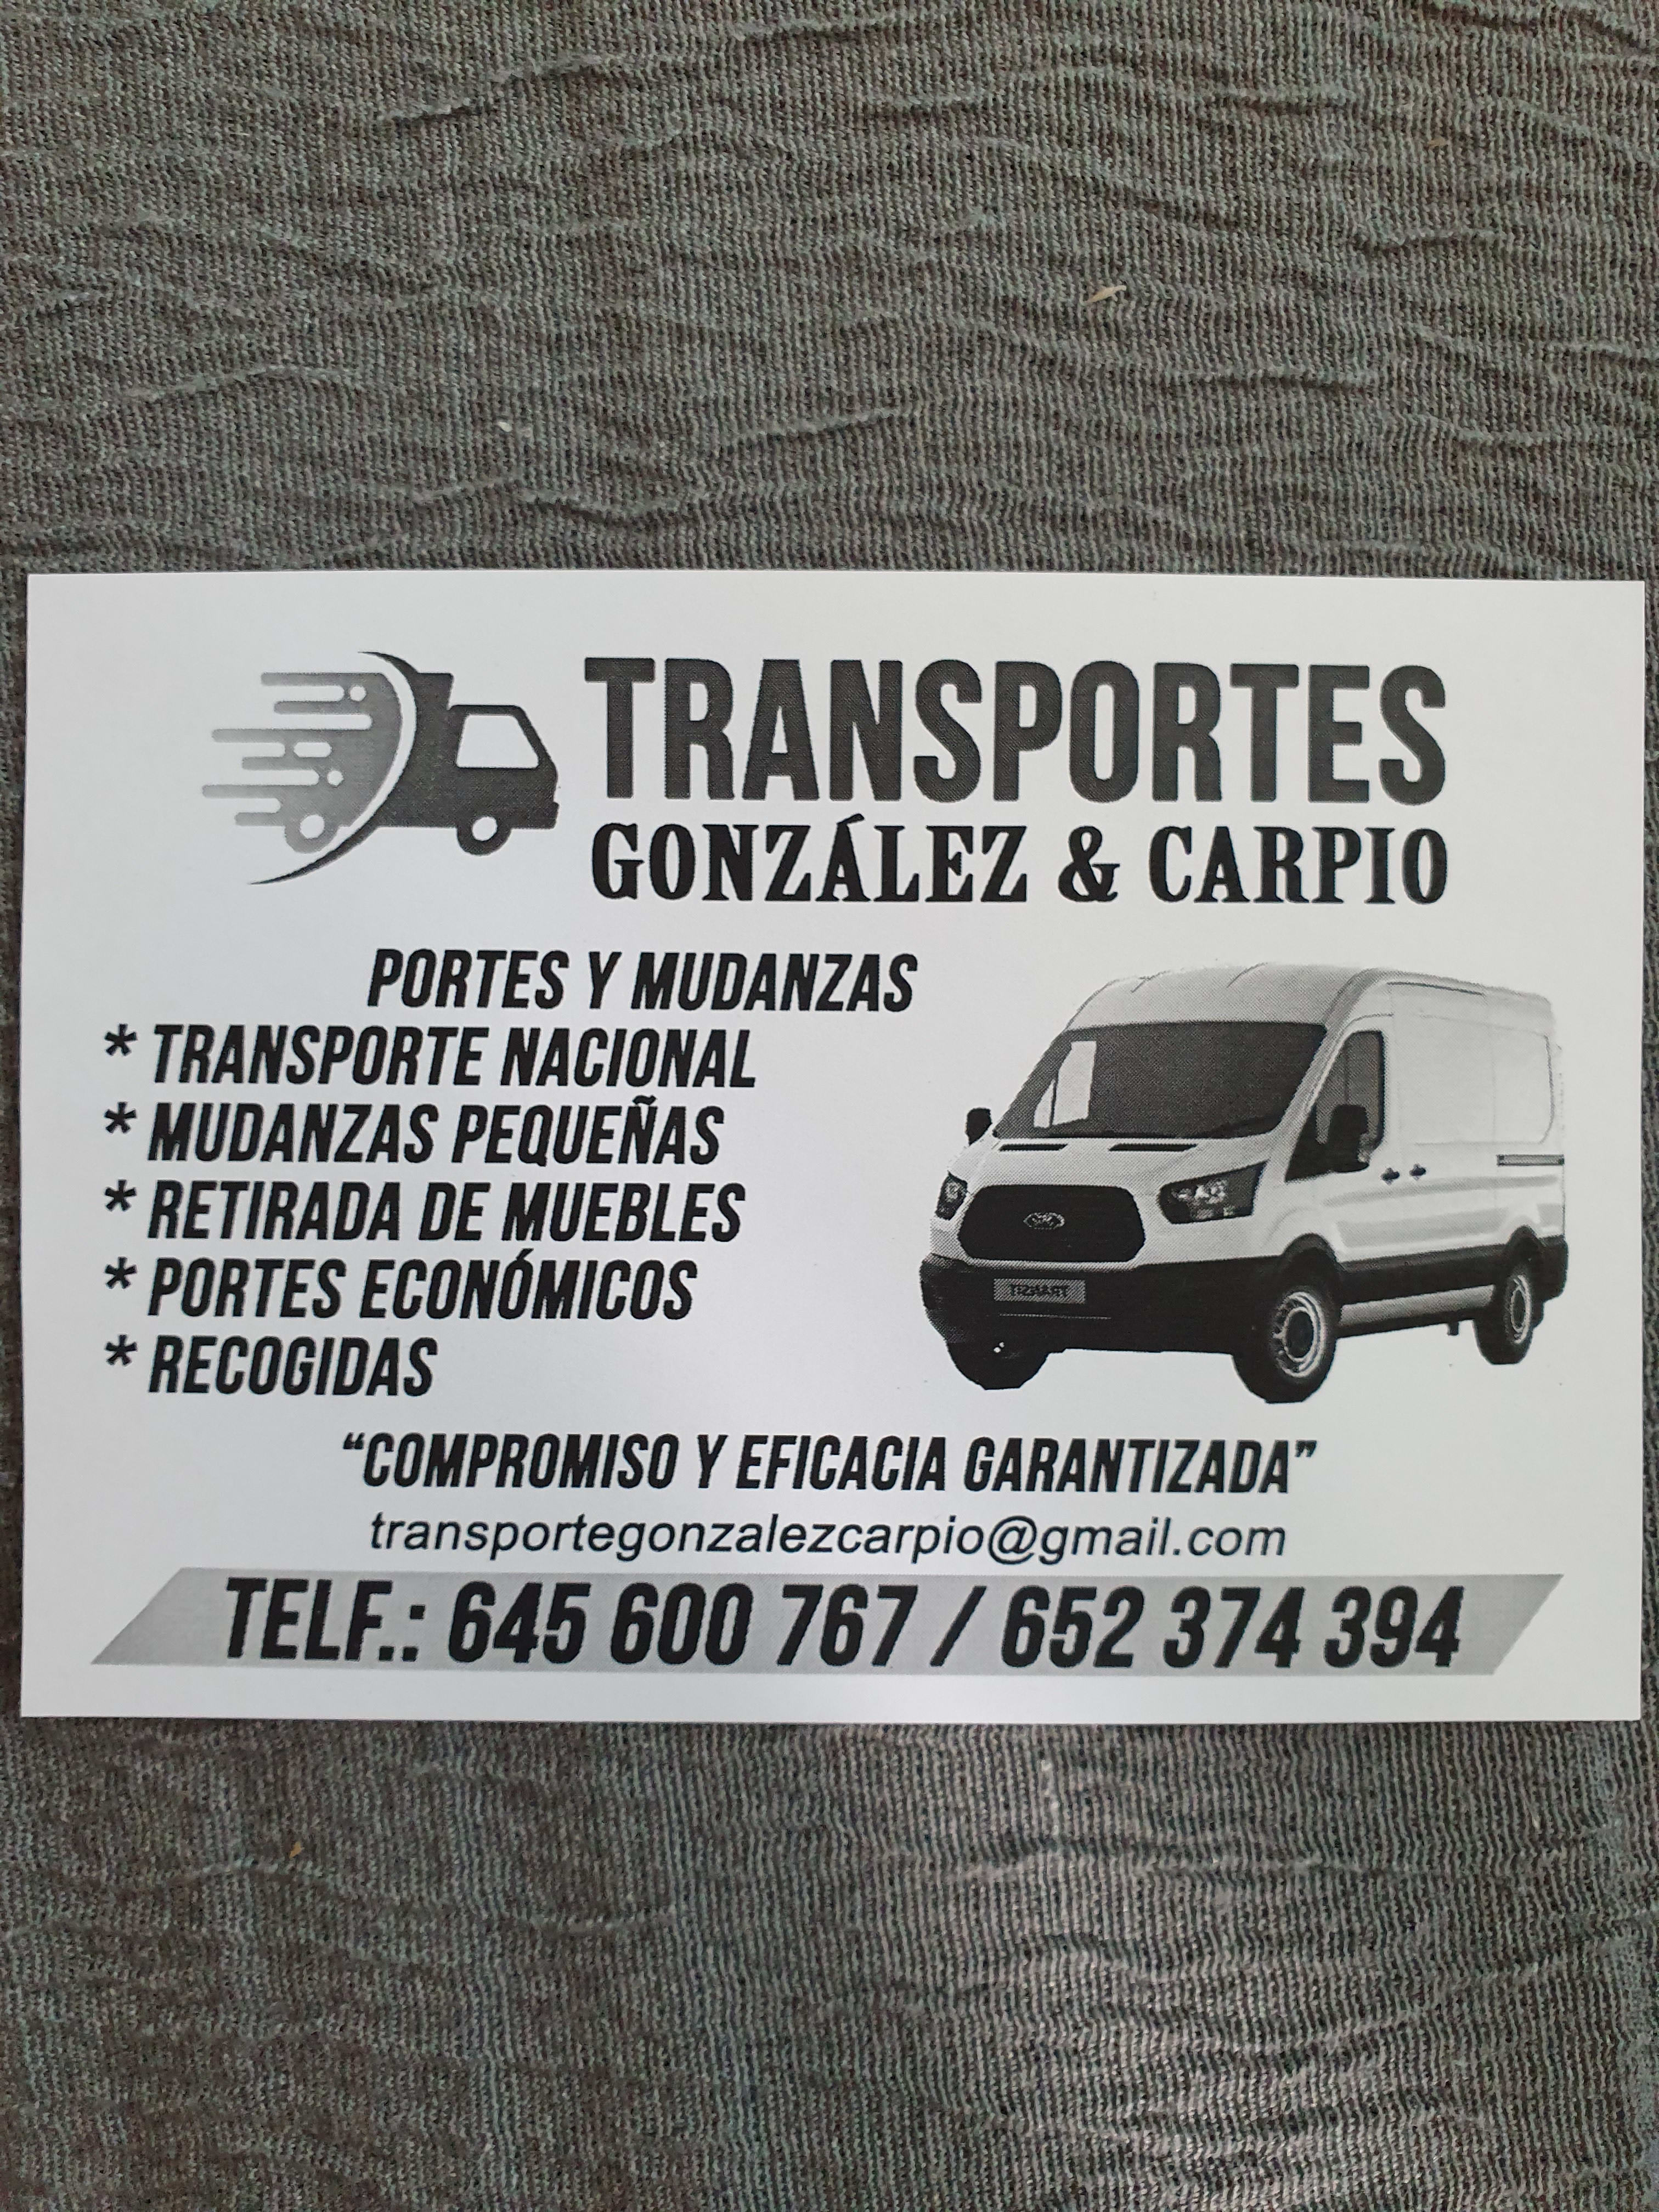 Transporte González & Carpio